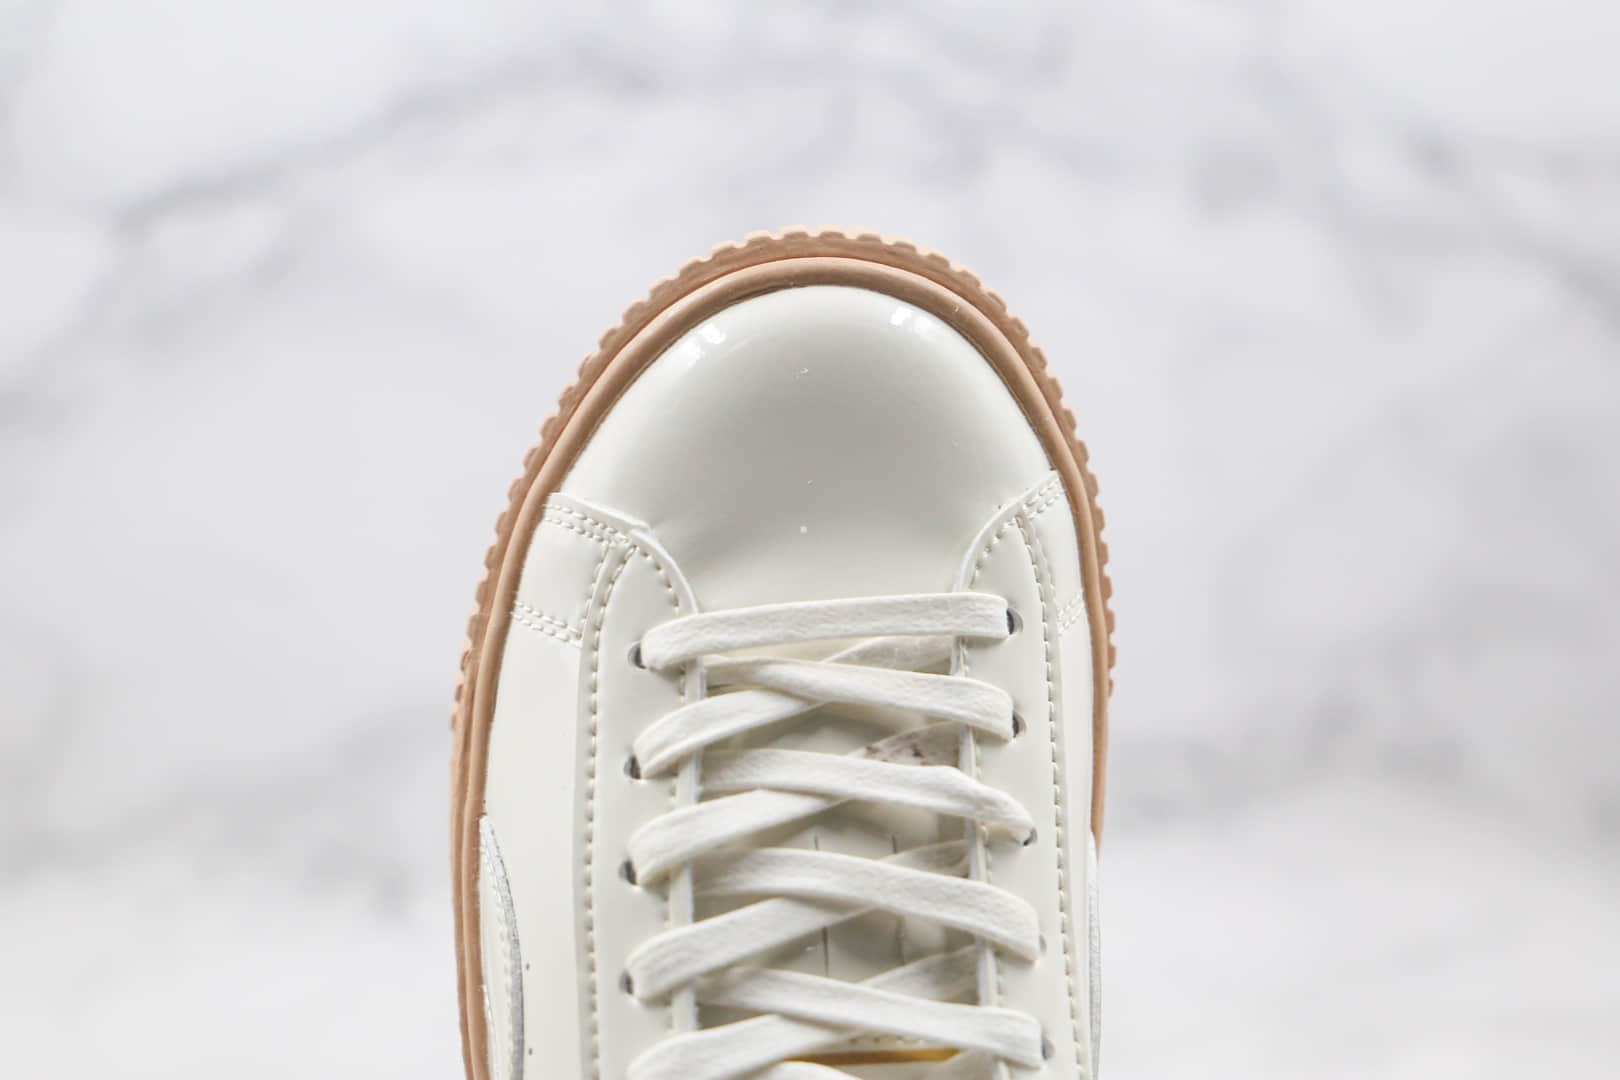 彪马PUMA Basket Platform纯原版本蕾哈娜二代米白漆皮板鞋原盒原标原鞋开模一比一打造